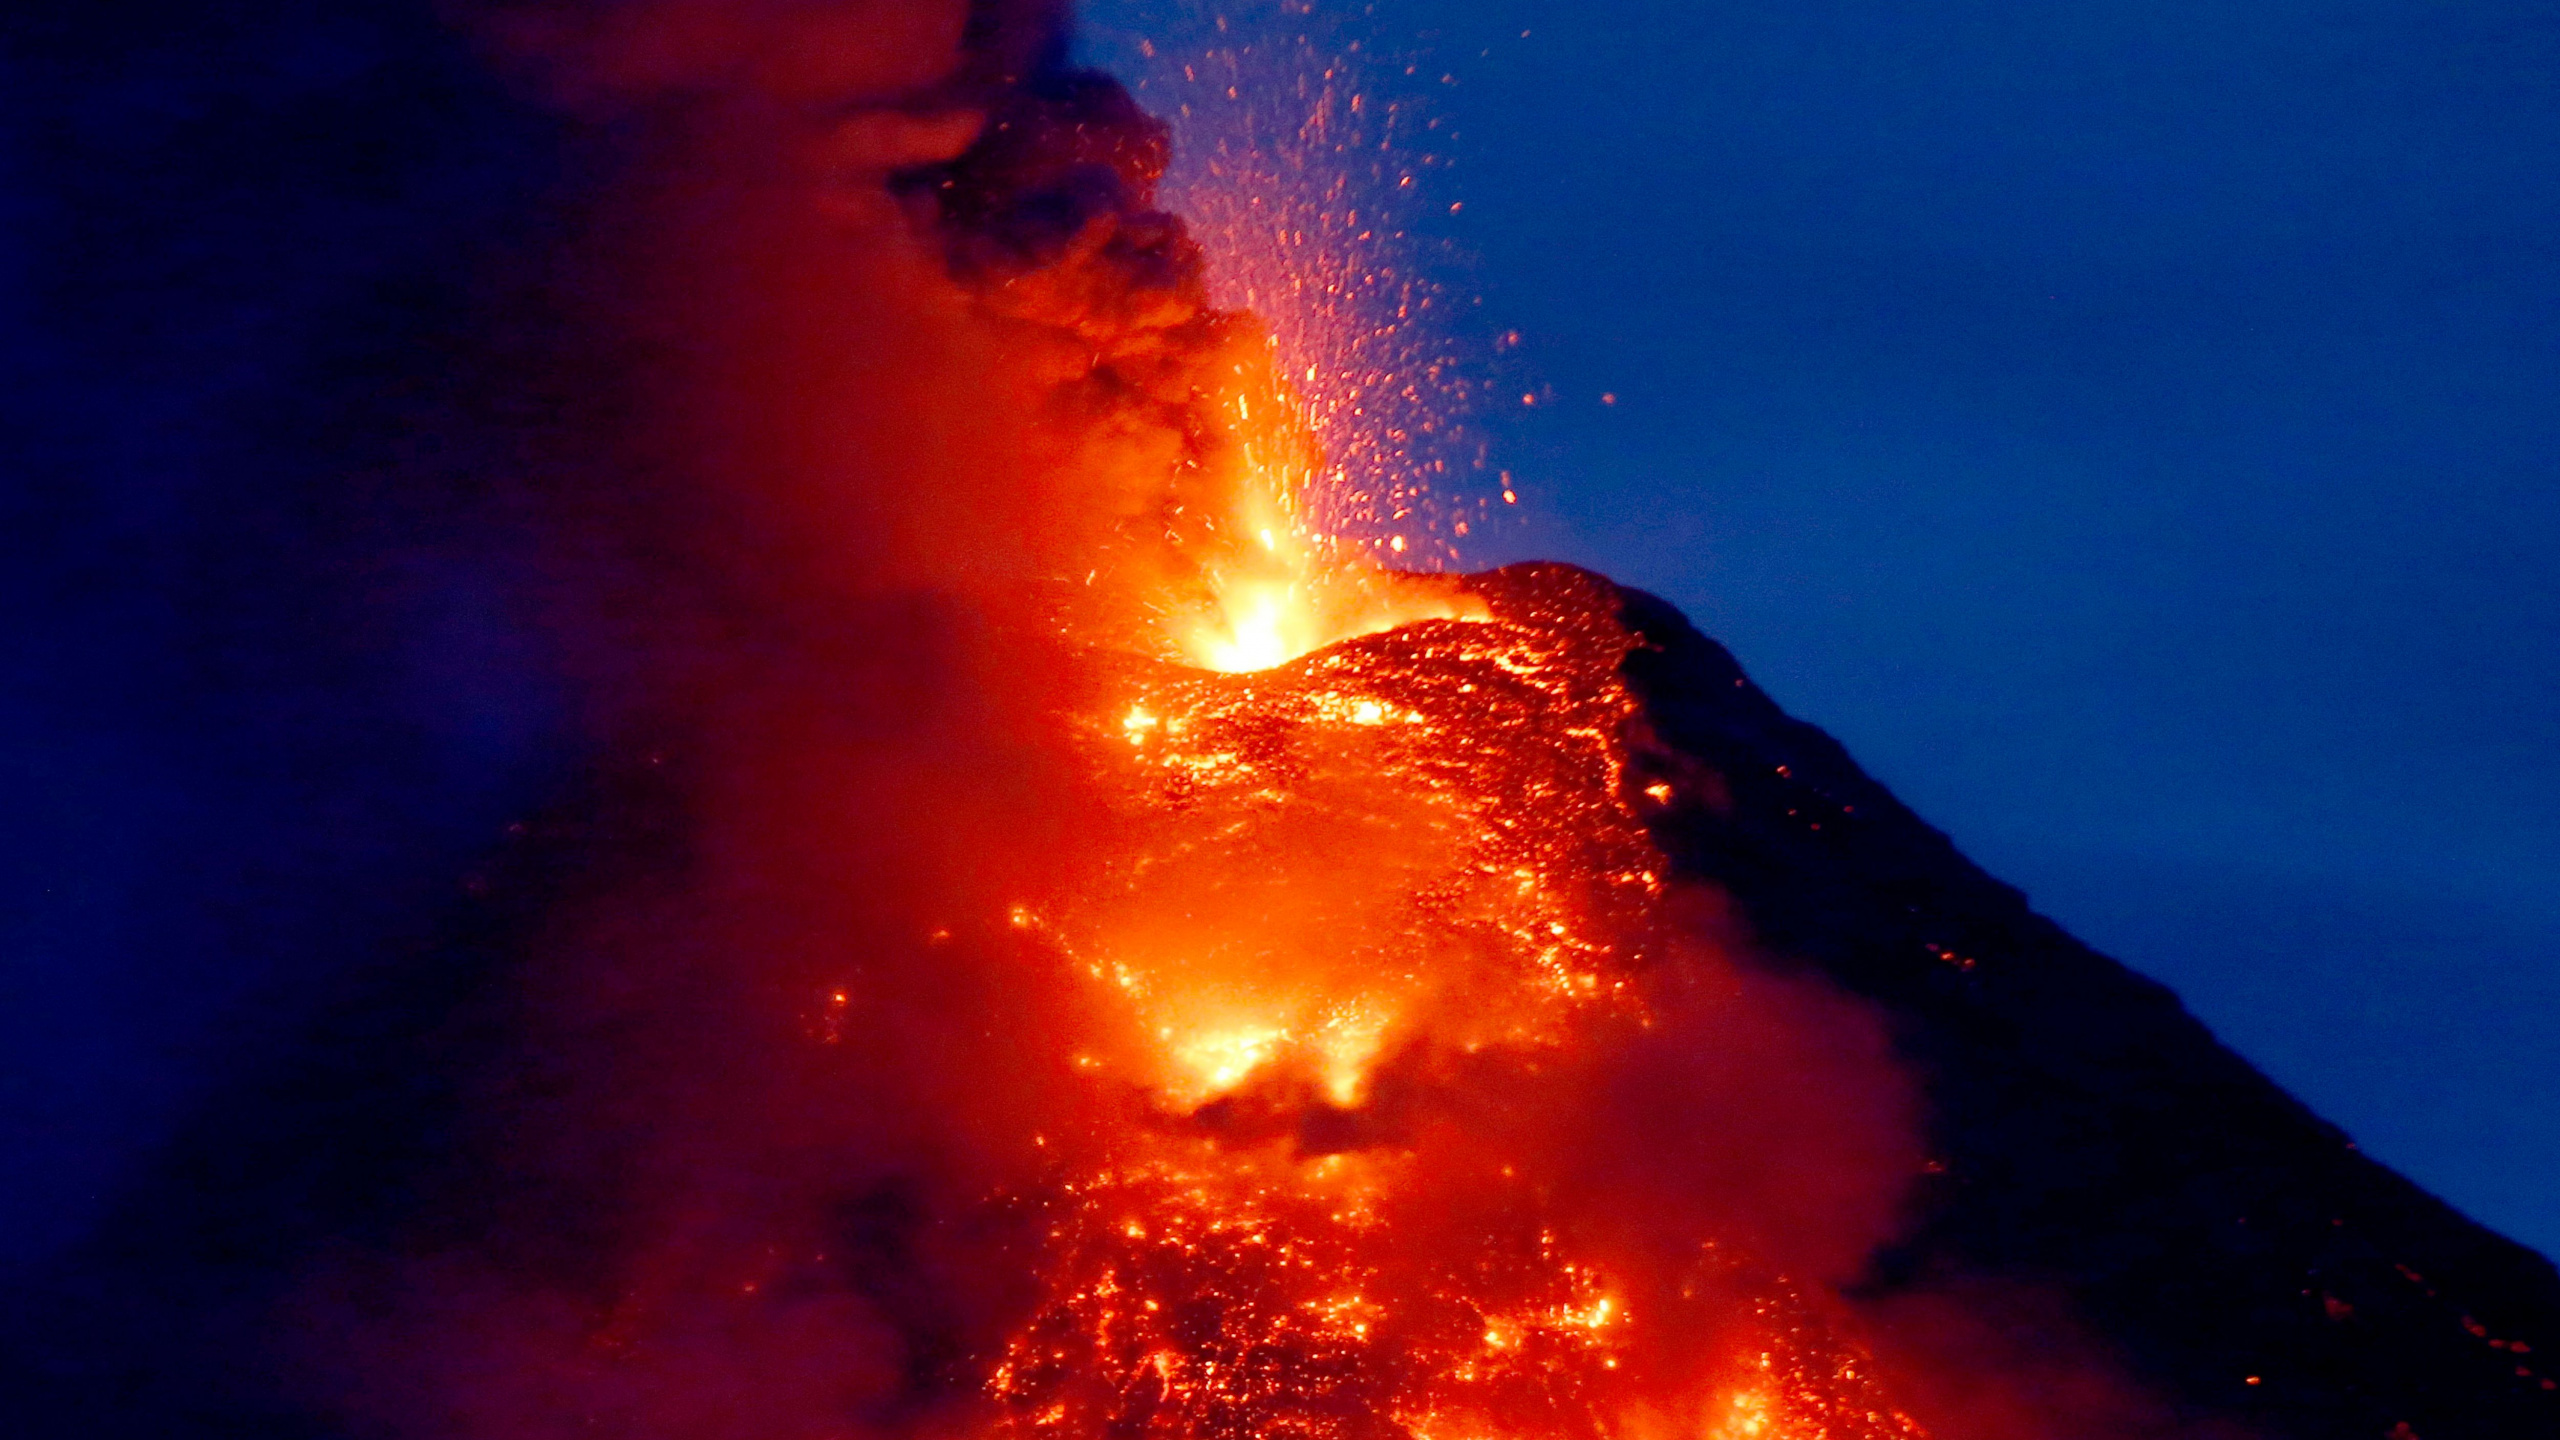 火山的地貌, 类型的火山爆发, 熔岩, 熔岩圆顶, 屏蔽火山 壁纸 2560x1440 允许